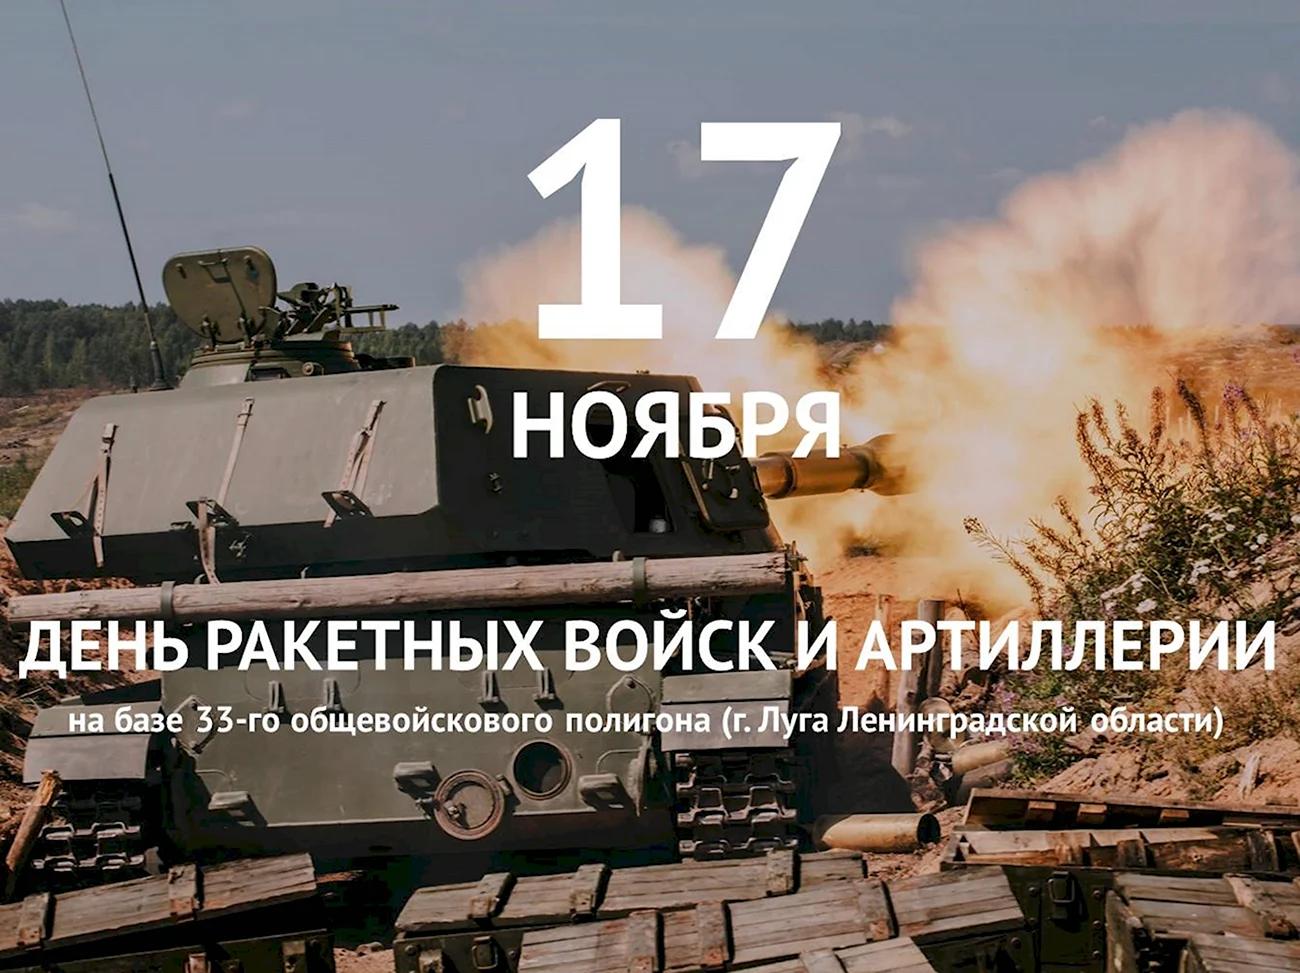 19 Ноября день ракетных войск и артиллерии. Поздравление